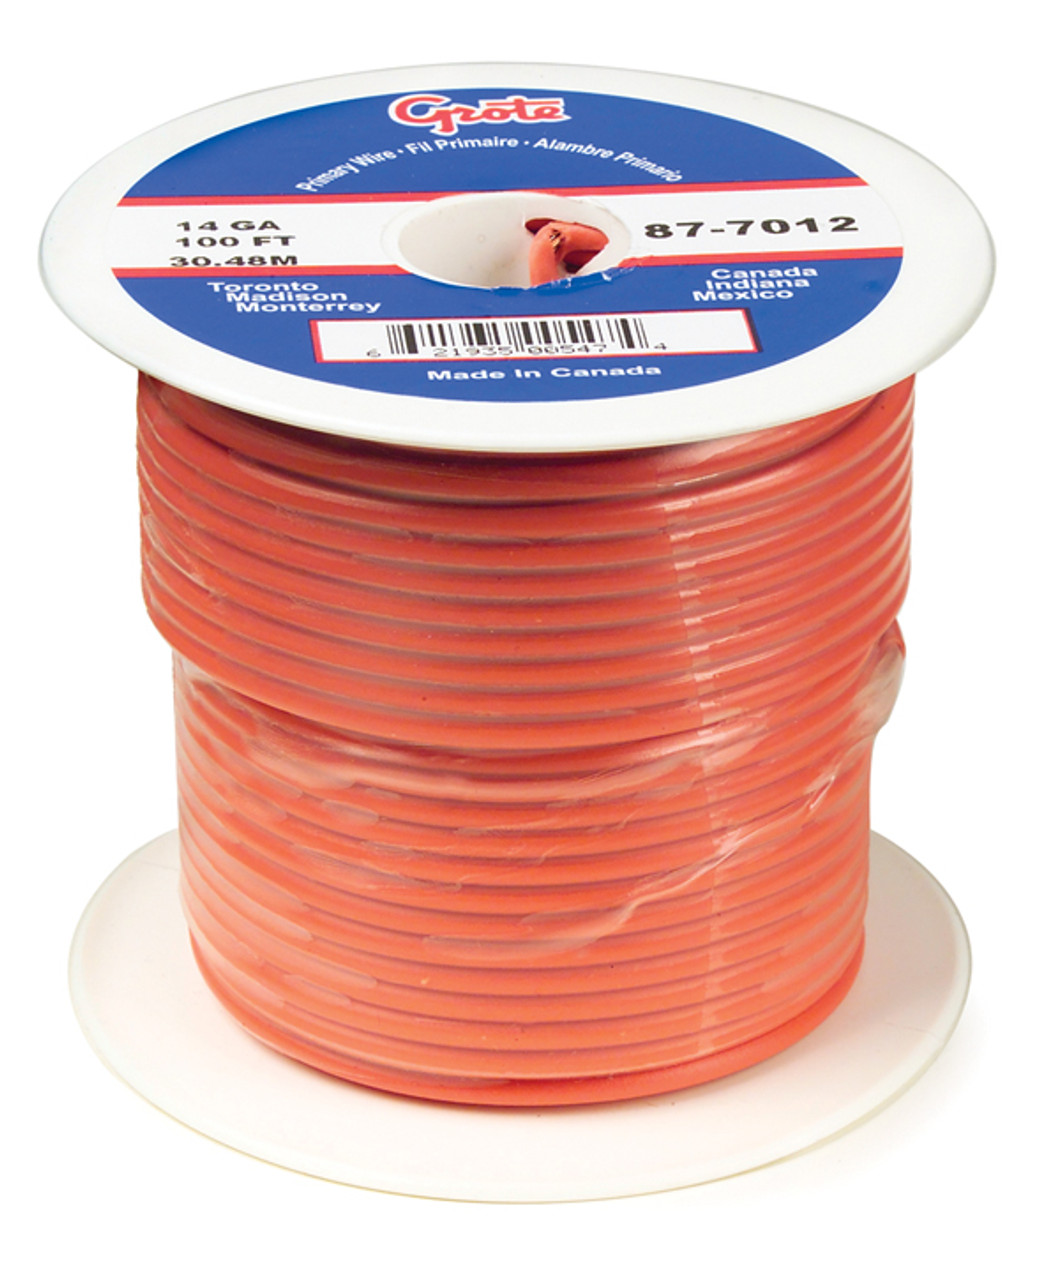 14 AWG General Purpose Thermo Plastic Wire @ 25' - Orange  89-7012